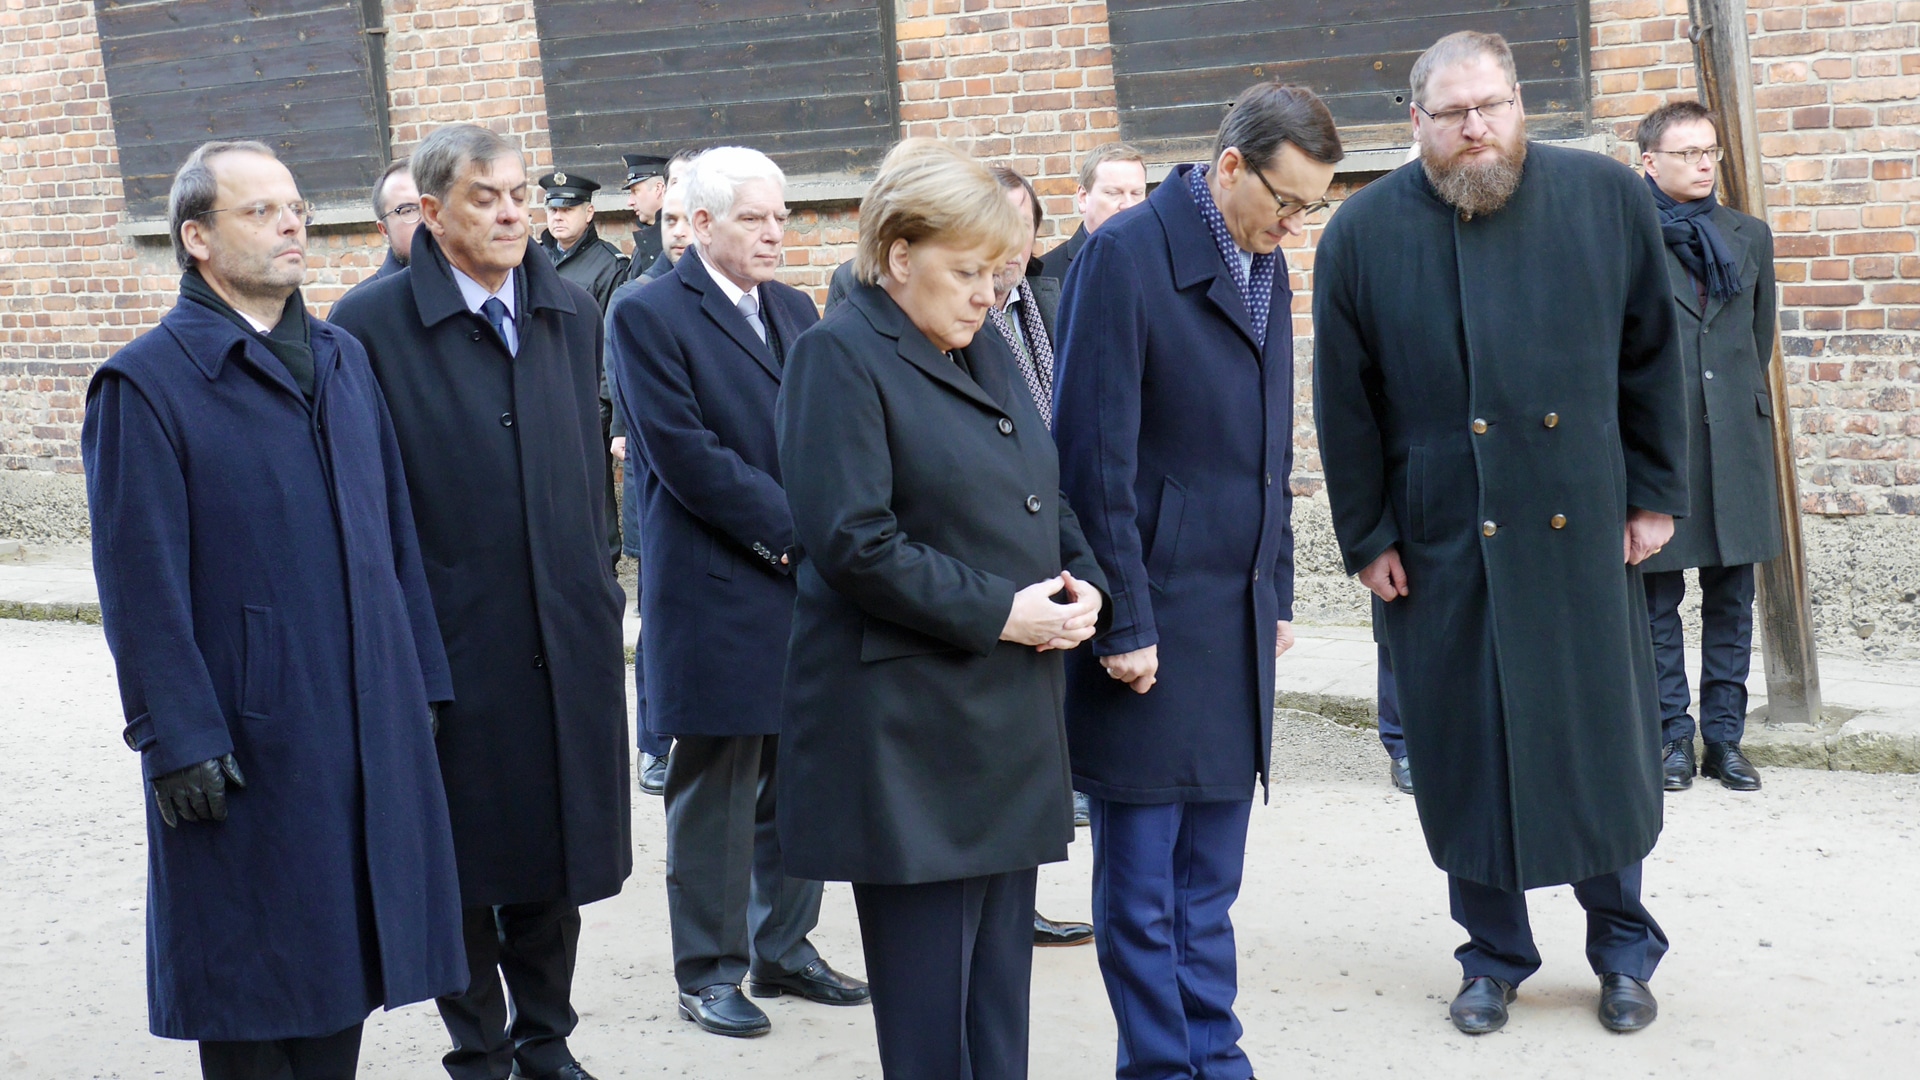 Ein Innehalten angesichts des Grauens: Merkel verneigt sich vor den Holocaust-Opfern